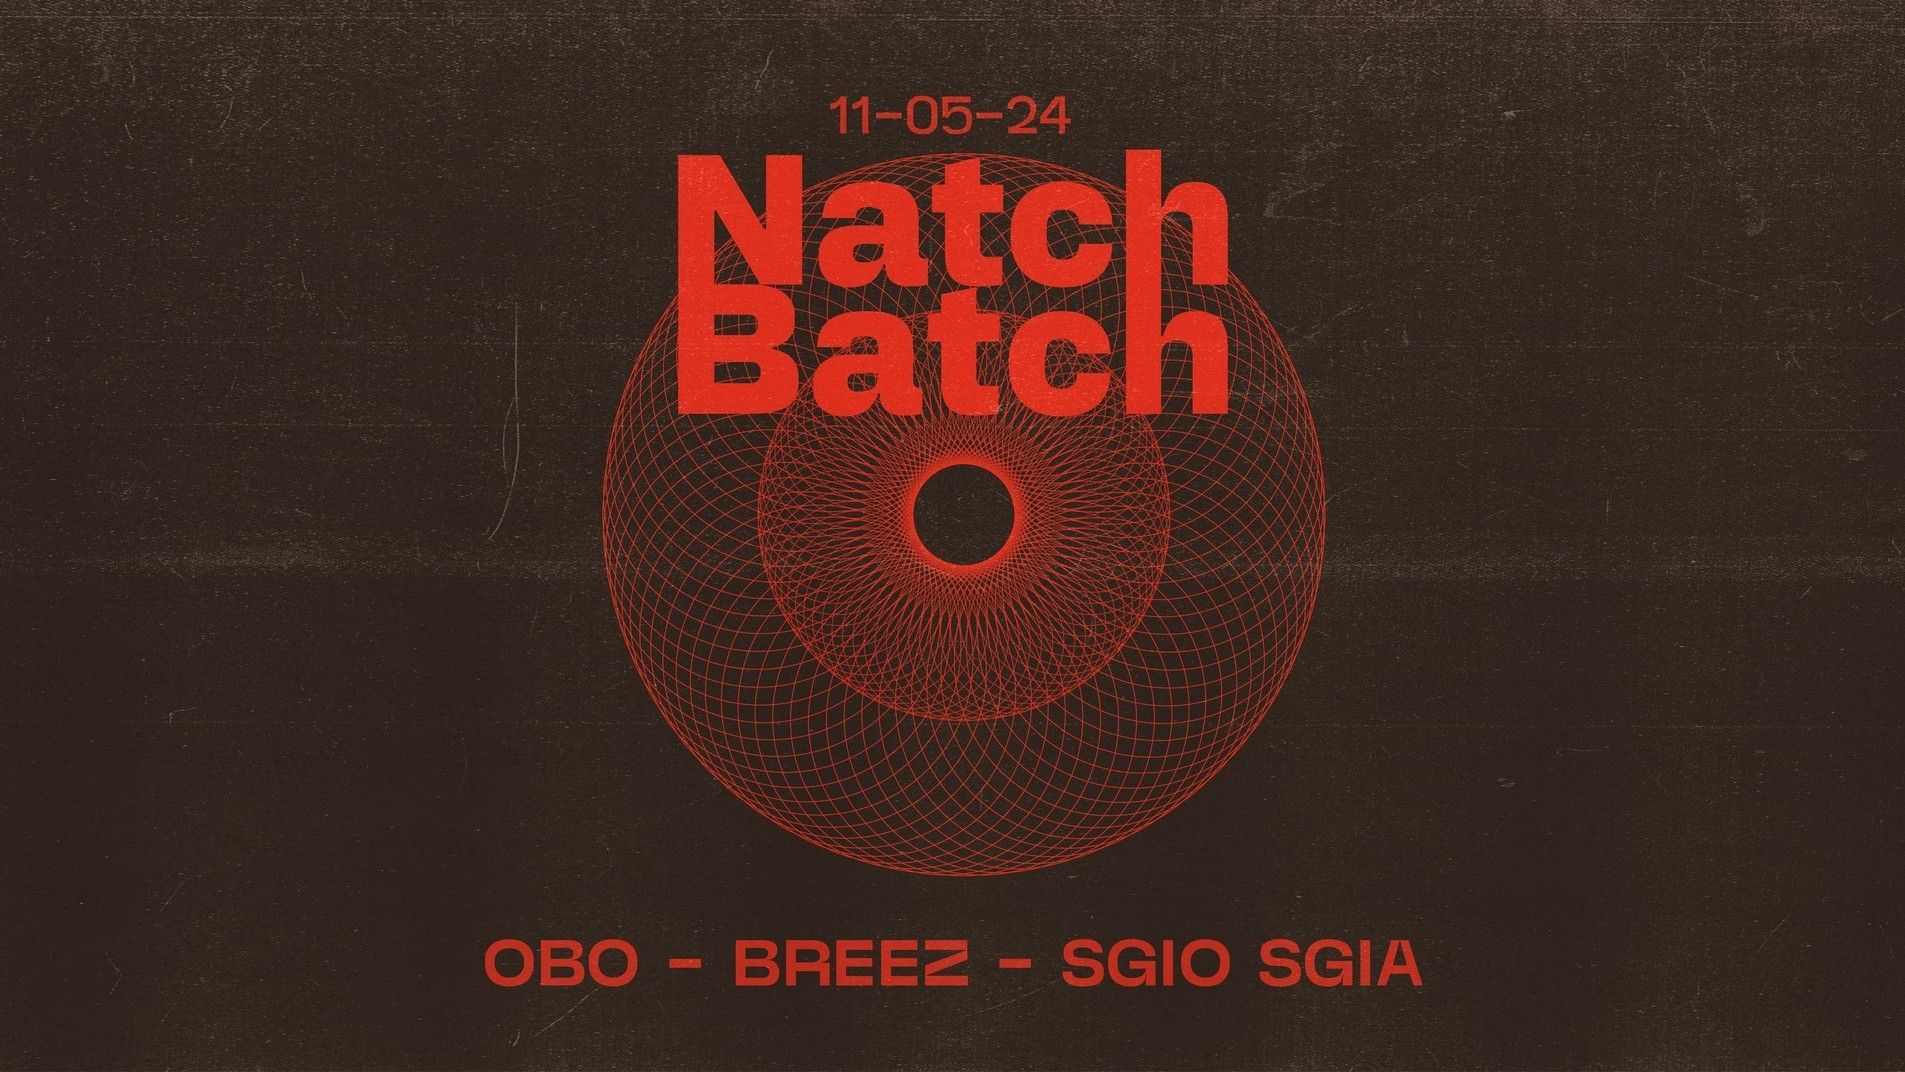 Natch Batch Party w/ Obo, Breez, Sgio Sgia